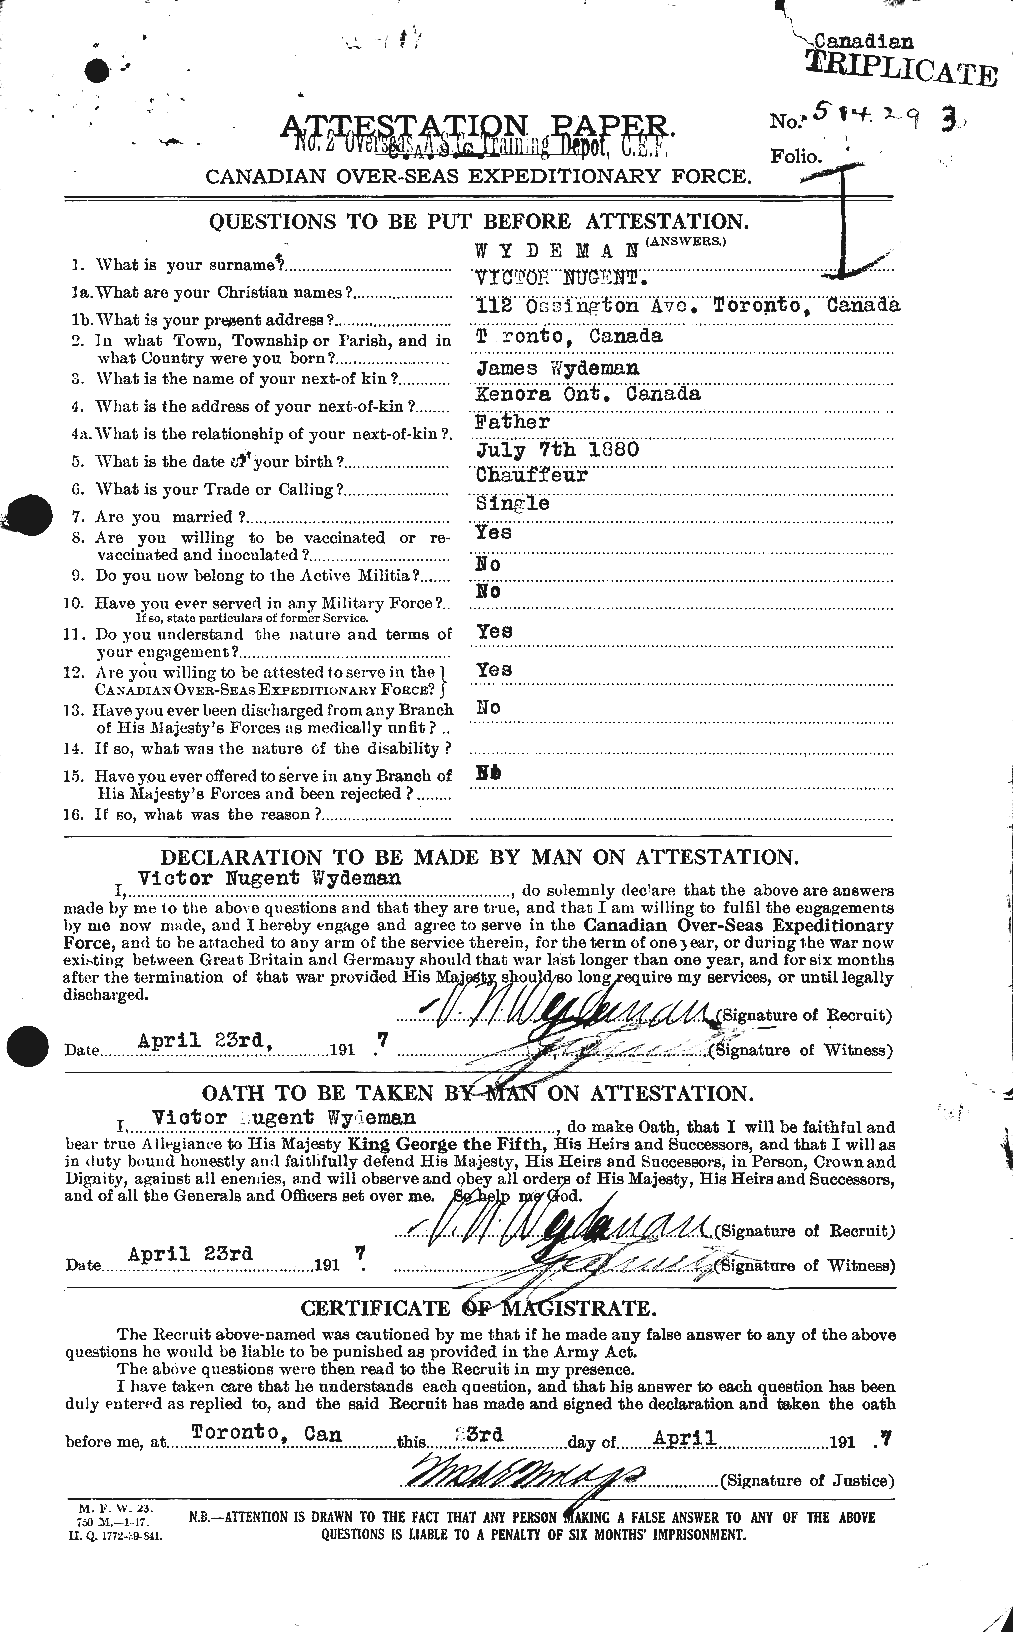 Dossiers du Personnel de la Première Guerre mondiale - CEC 686606a